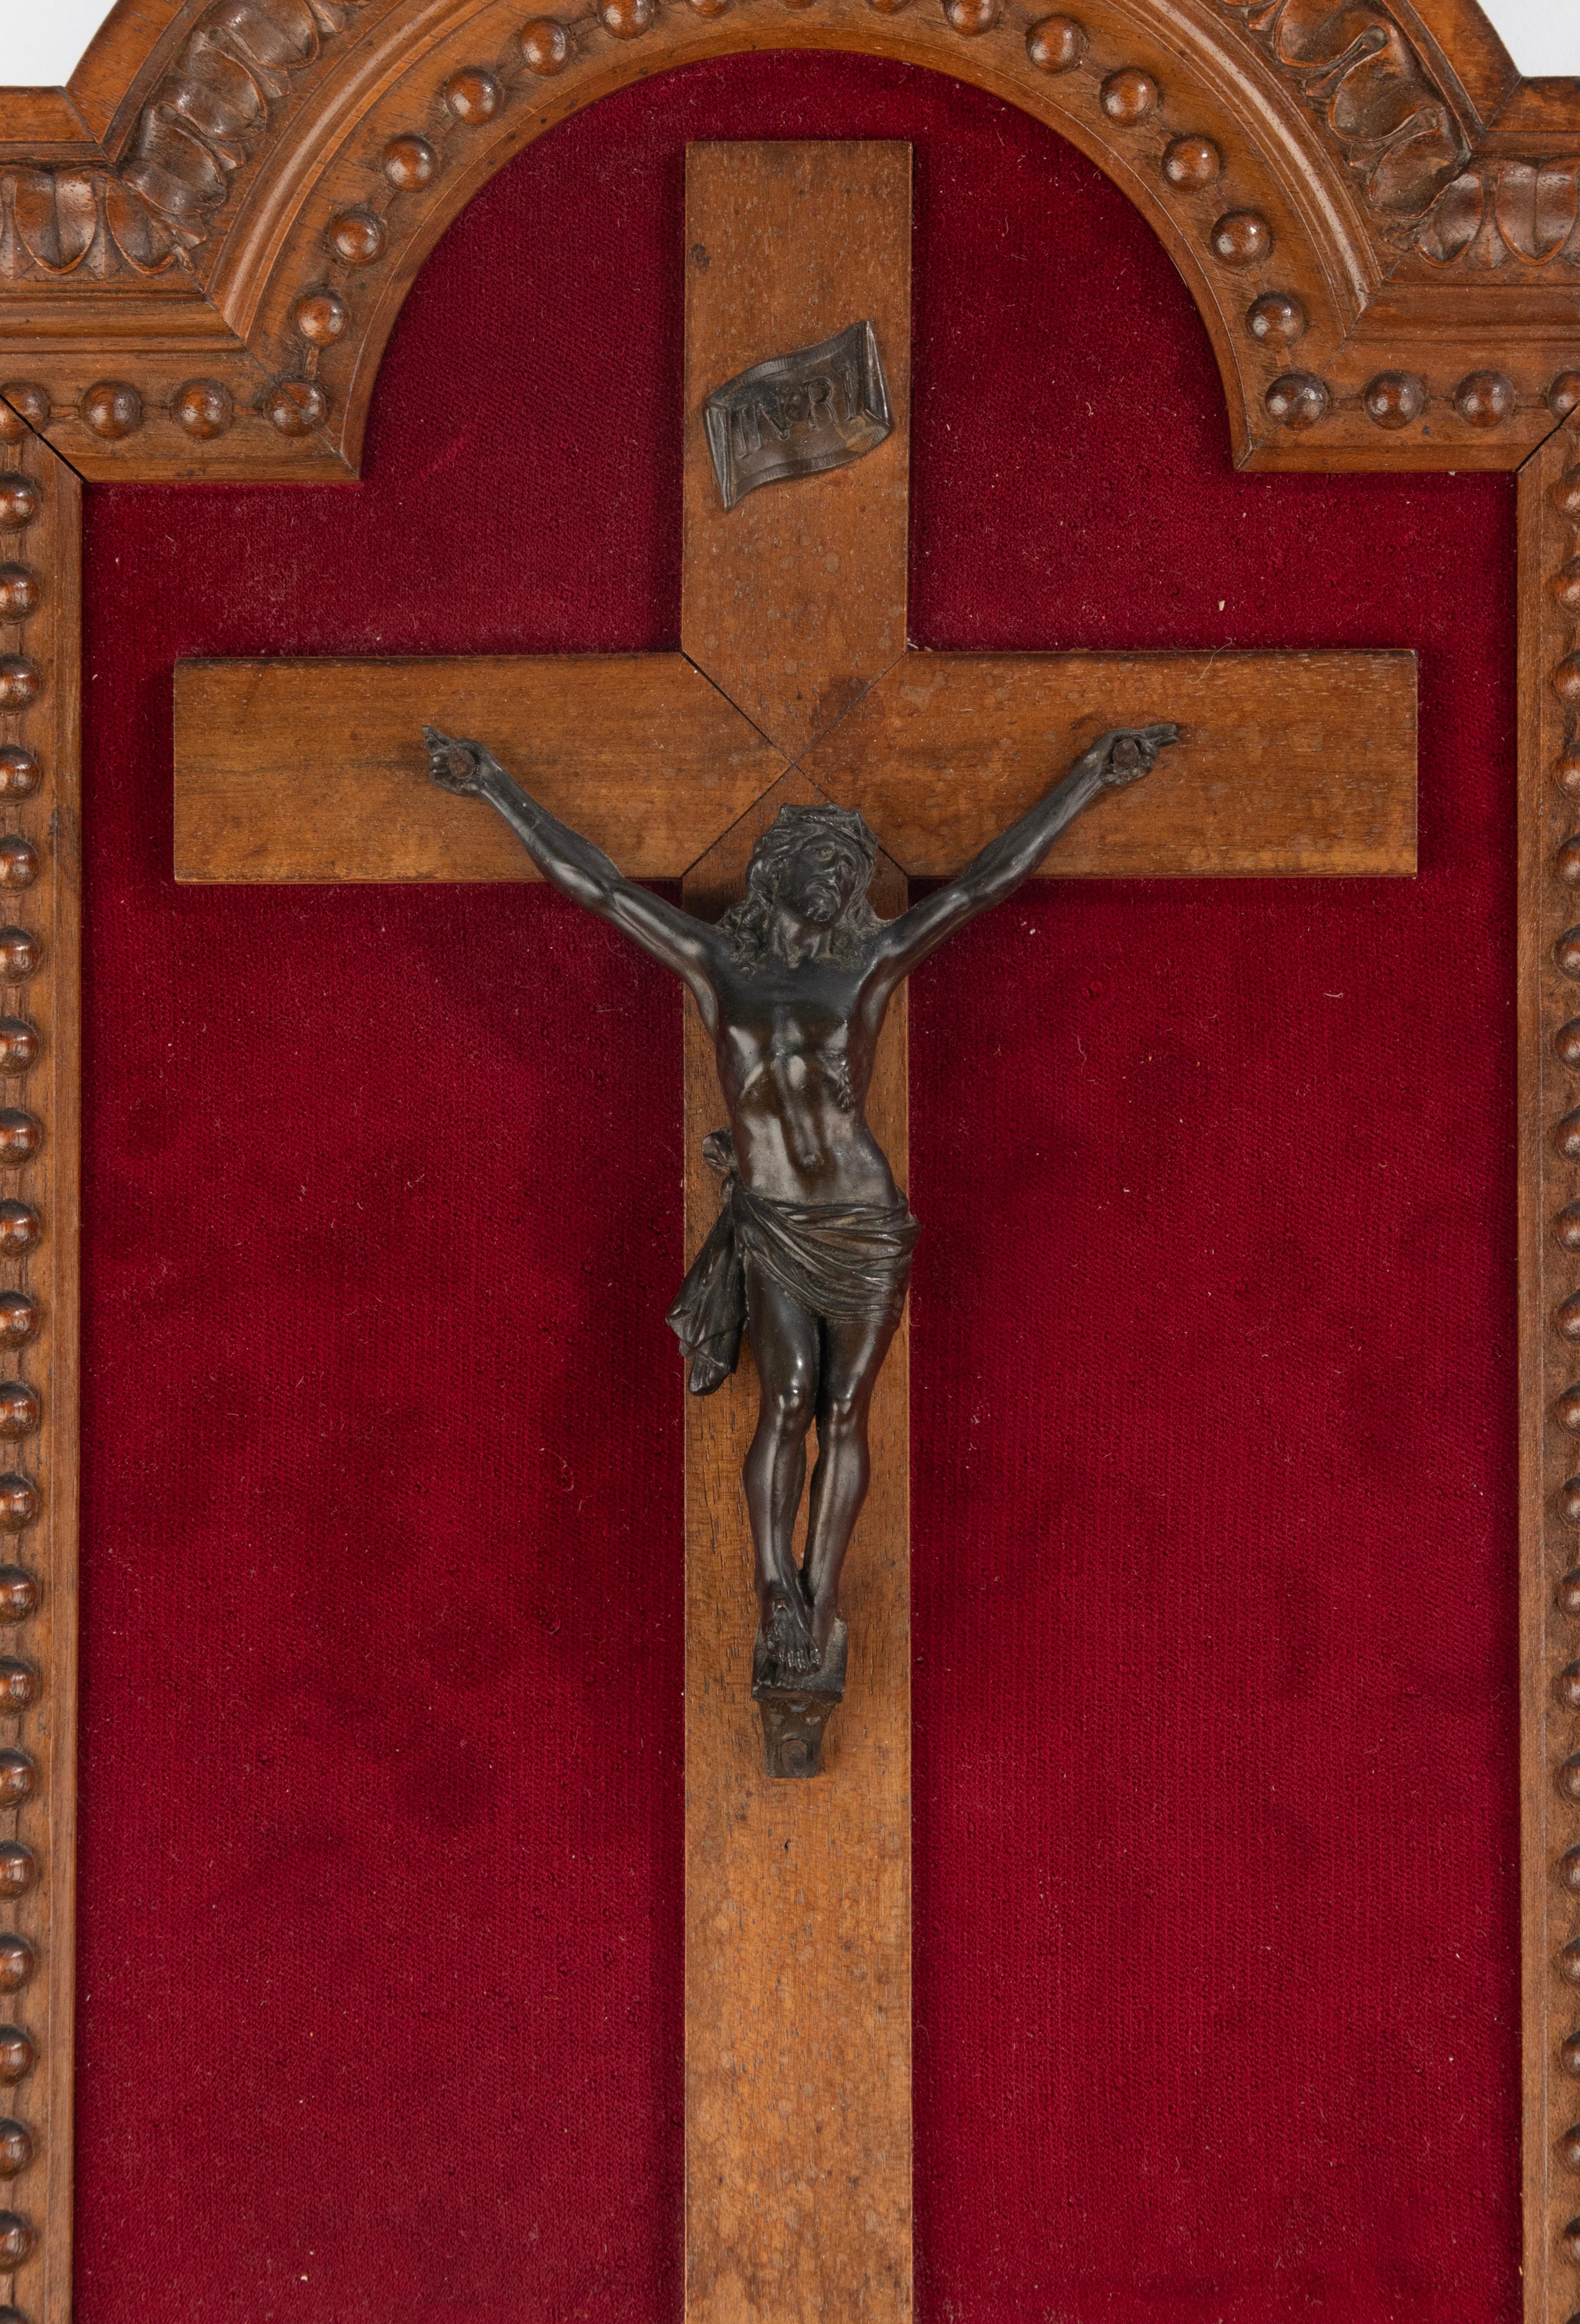 Une belle figure en bronze de Jésus-Christ, un Corpus Christi. Il est suspendu à une croix en noyer, le cadre est également en noyer, avec de fines sculptures. 
Cette pièce date d'environ 1890. Il est en très bon état, le bronze a une belle patine